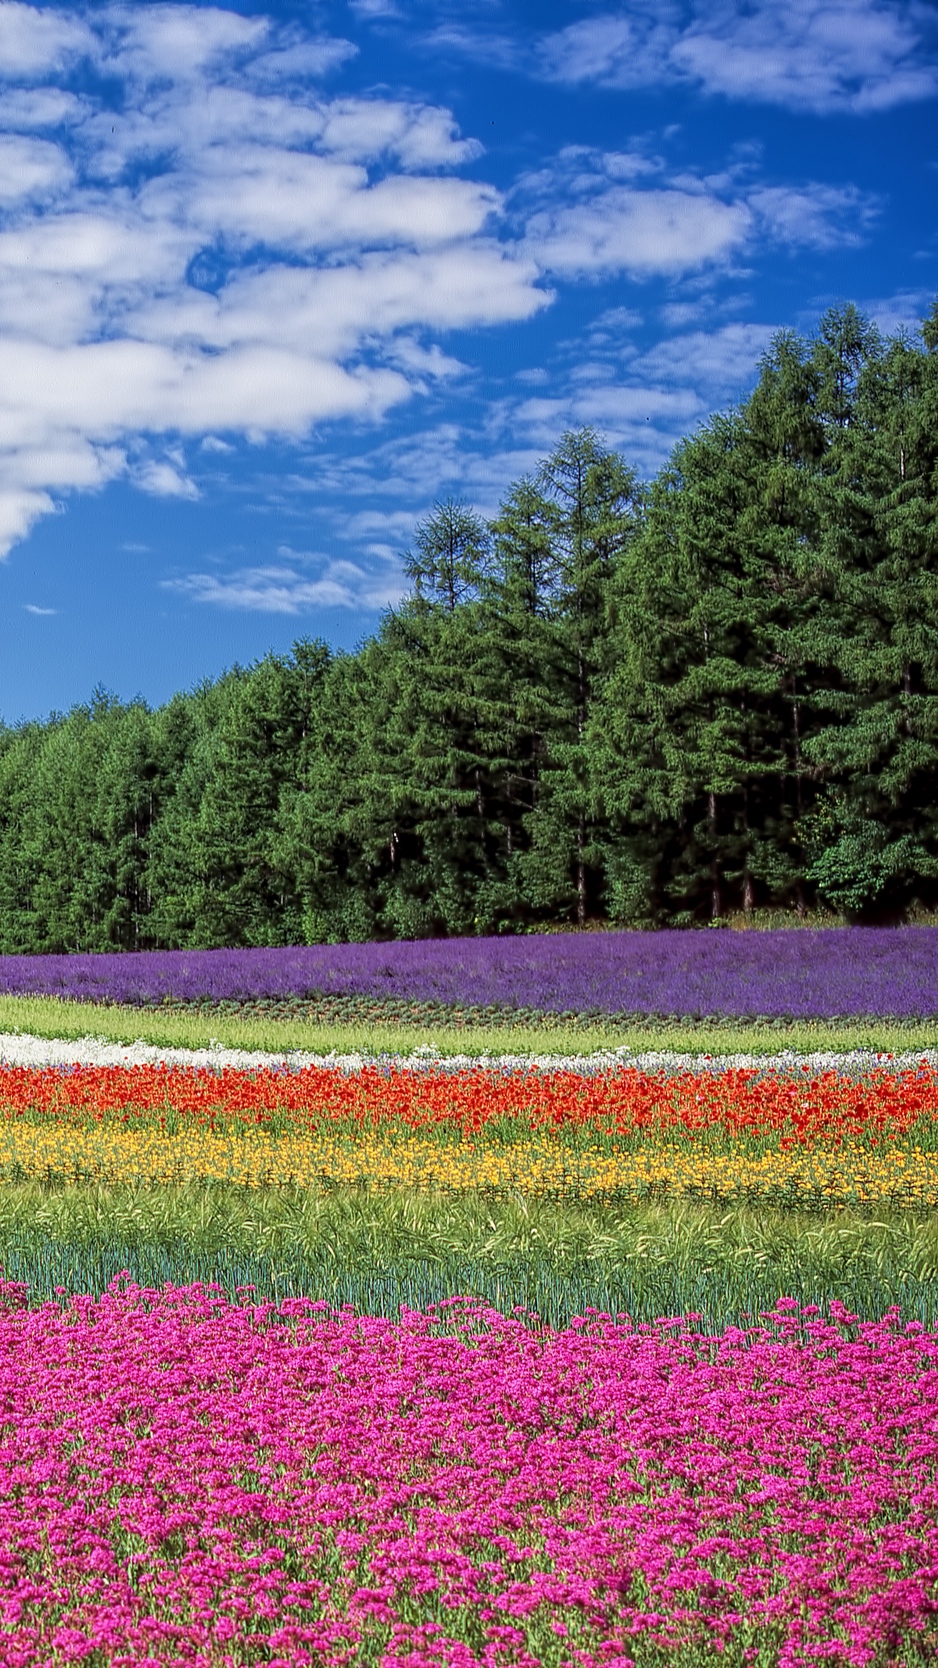 Download wallpaper 938x1668 hokkaido, japan, flowers, field iphone